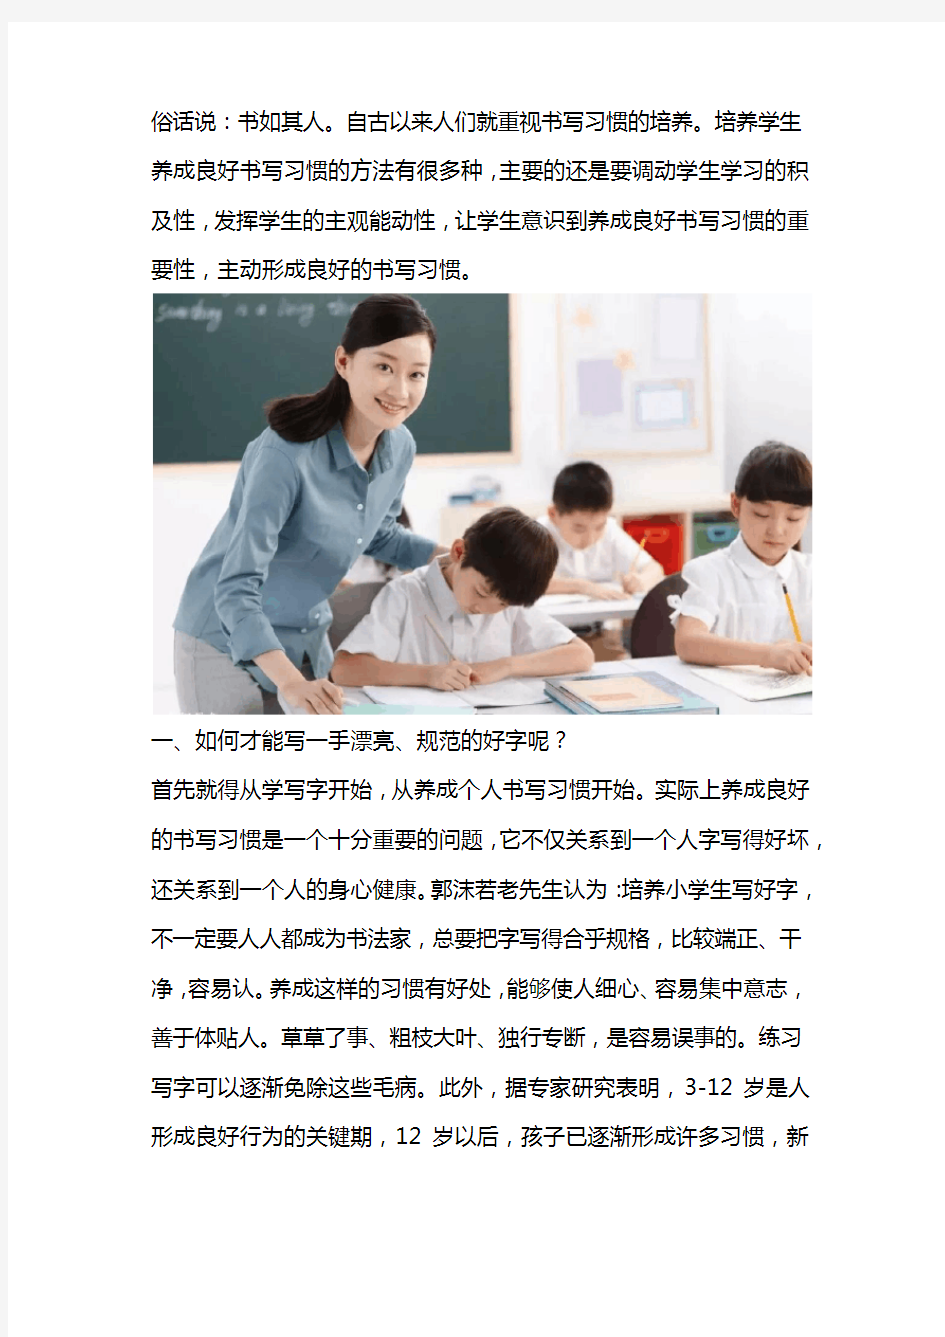 规范汉字书写,具有极其重要的意义!小学生更应重视硬笔书法的练习。